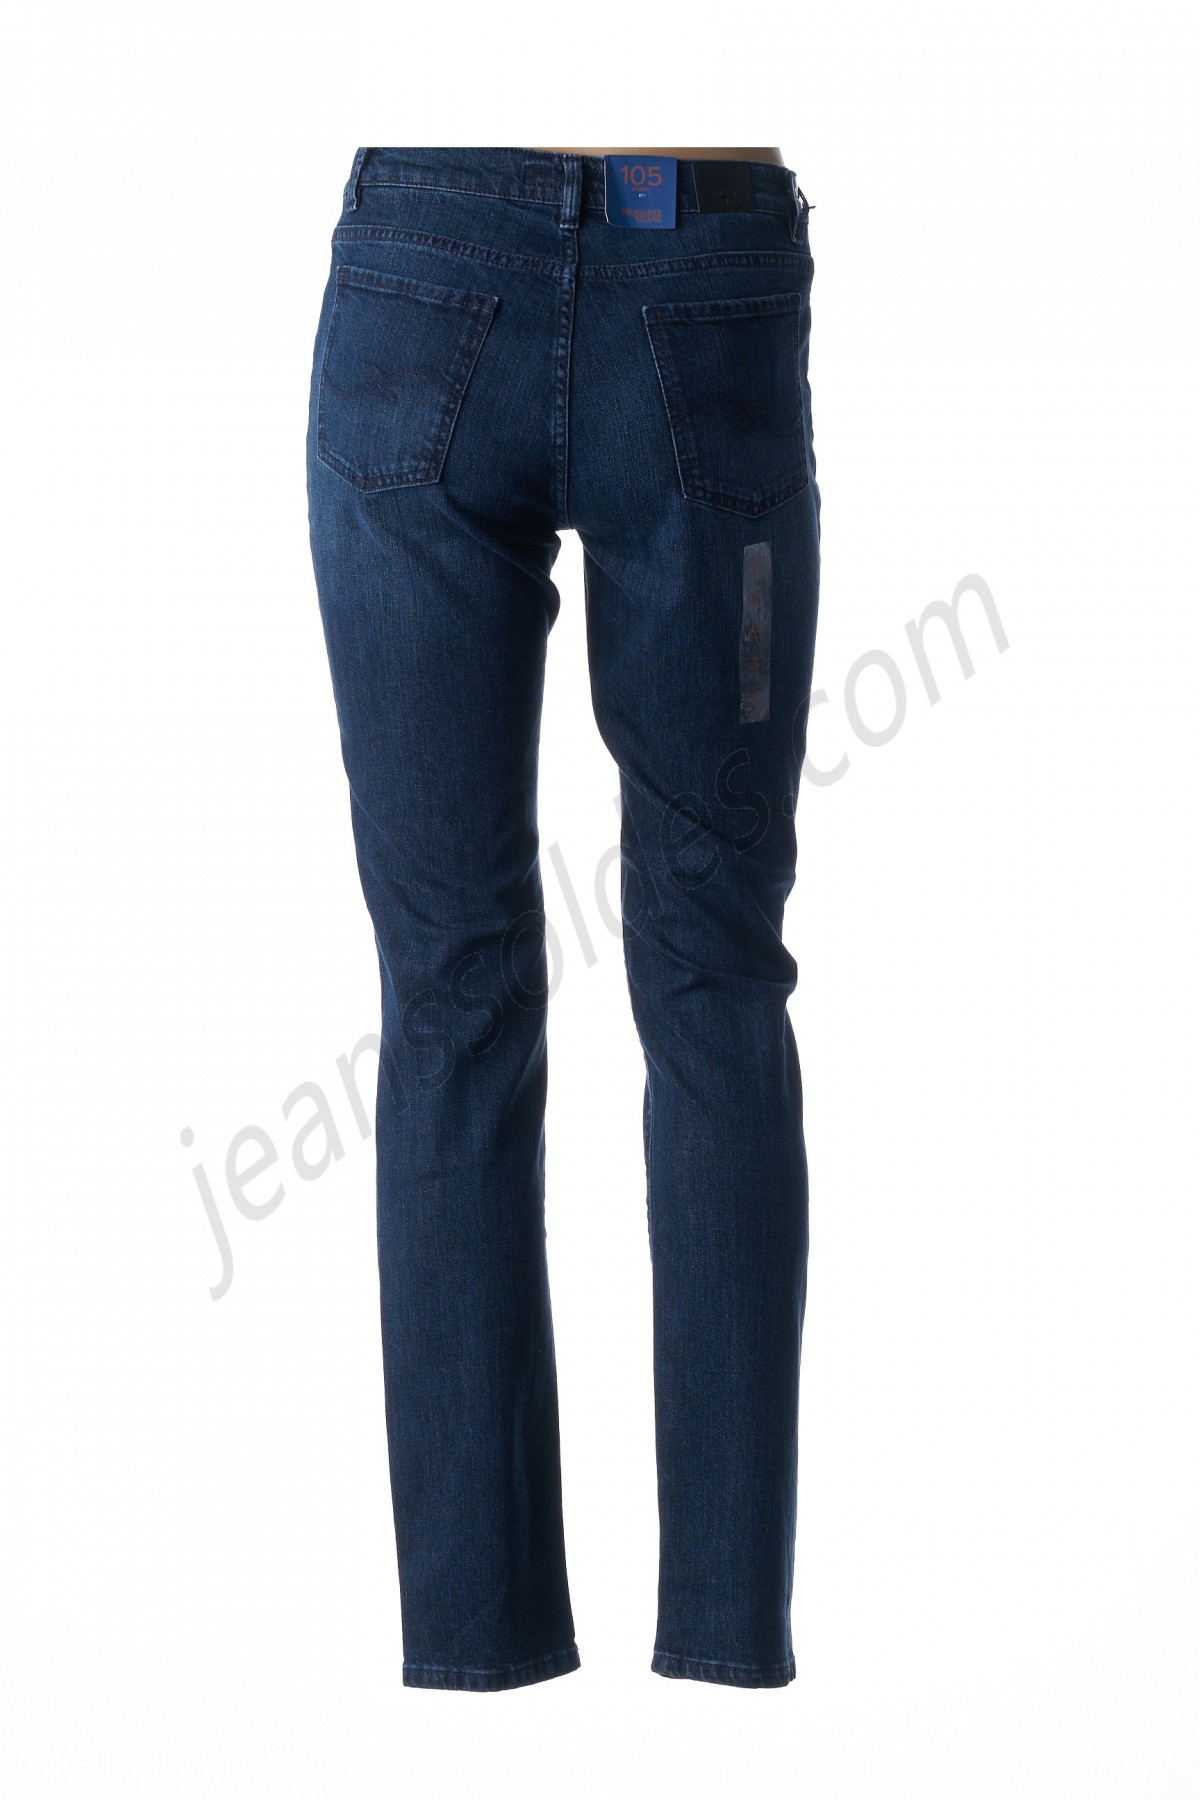 trussardi jeans-Jeans coupe slim prix d’amis - -1